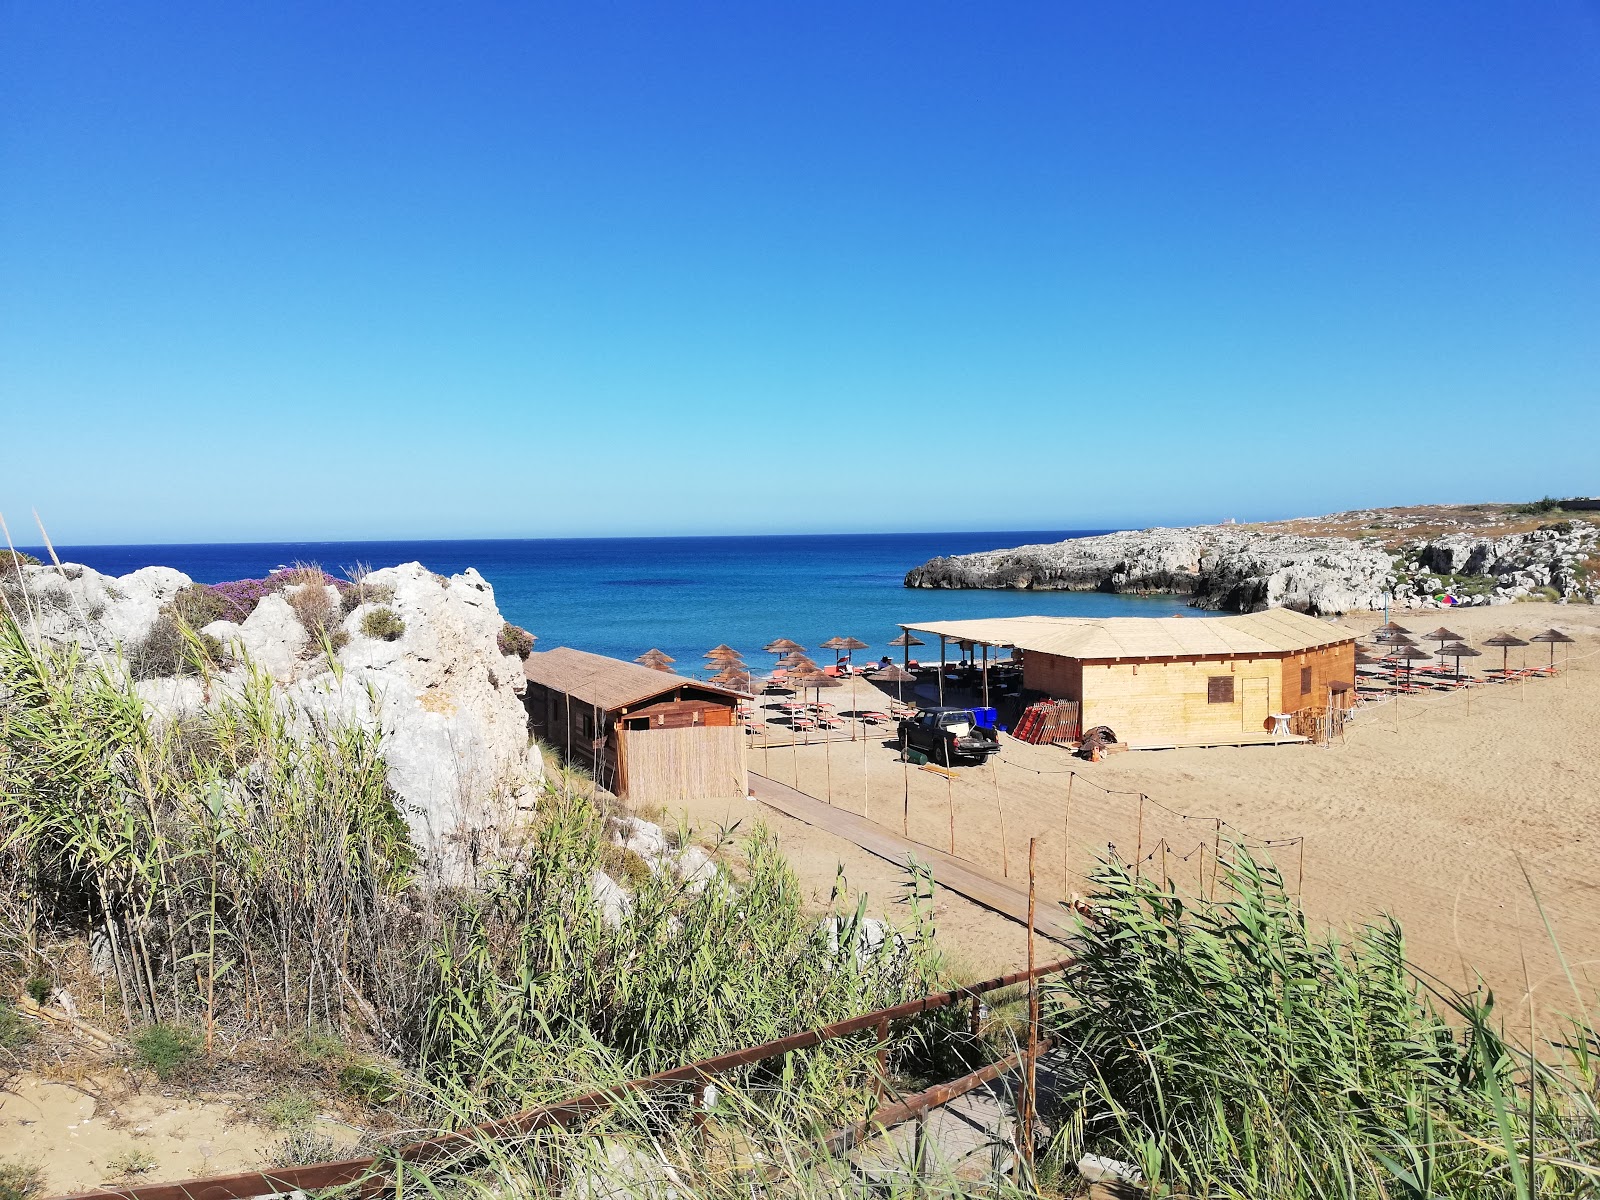 Foto av Spiaggia Cavettone med liten vik